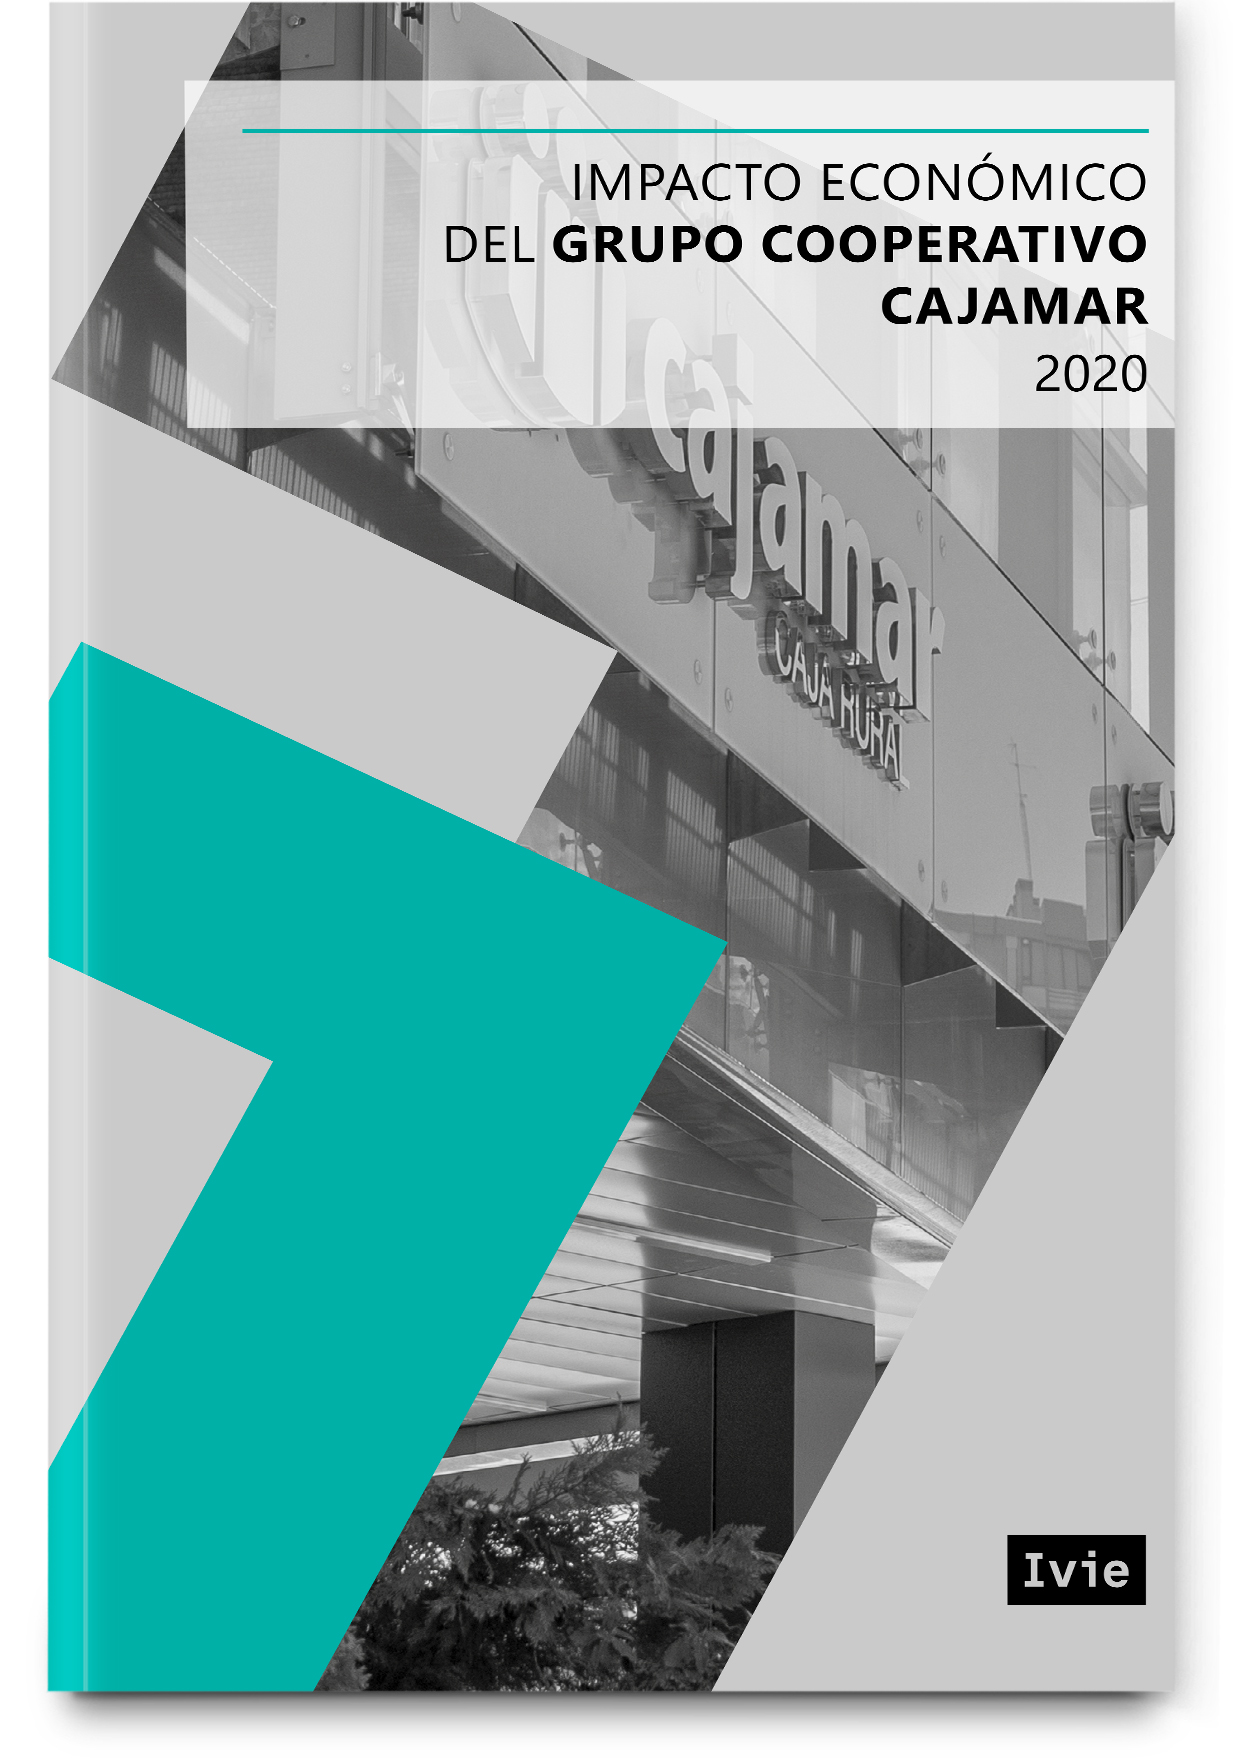 Economic impact of Grupo Cooperativo Cajamar